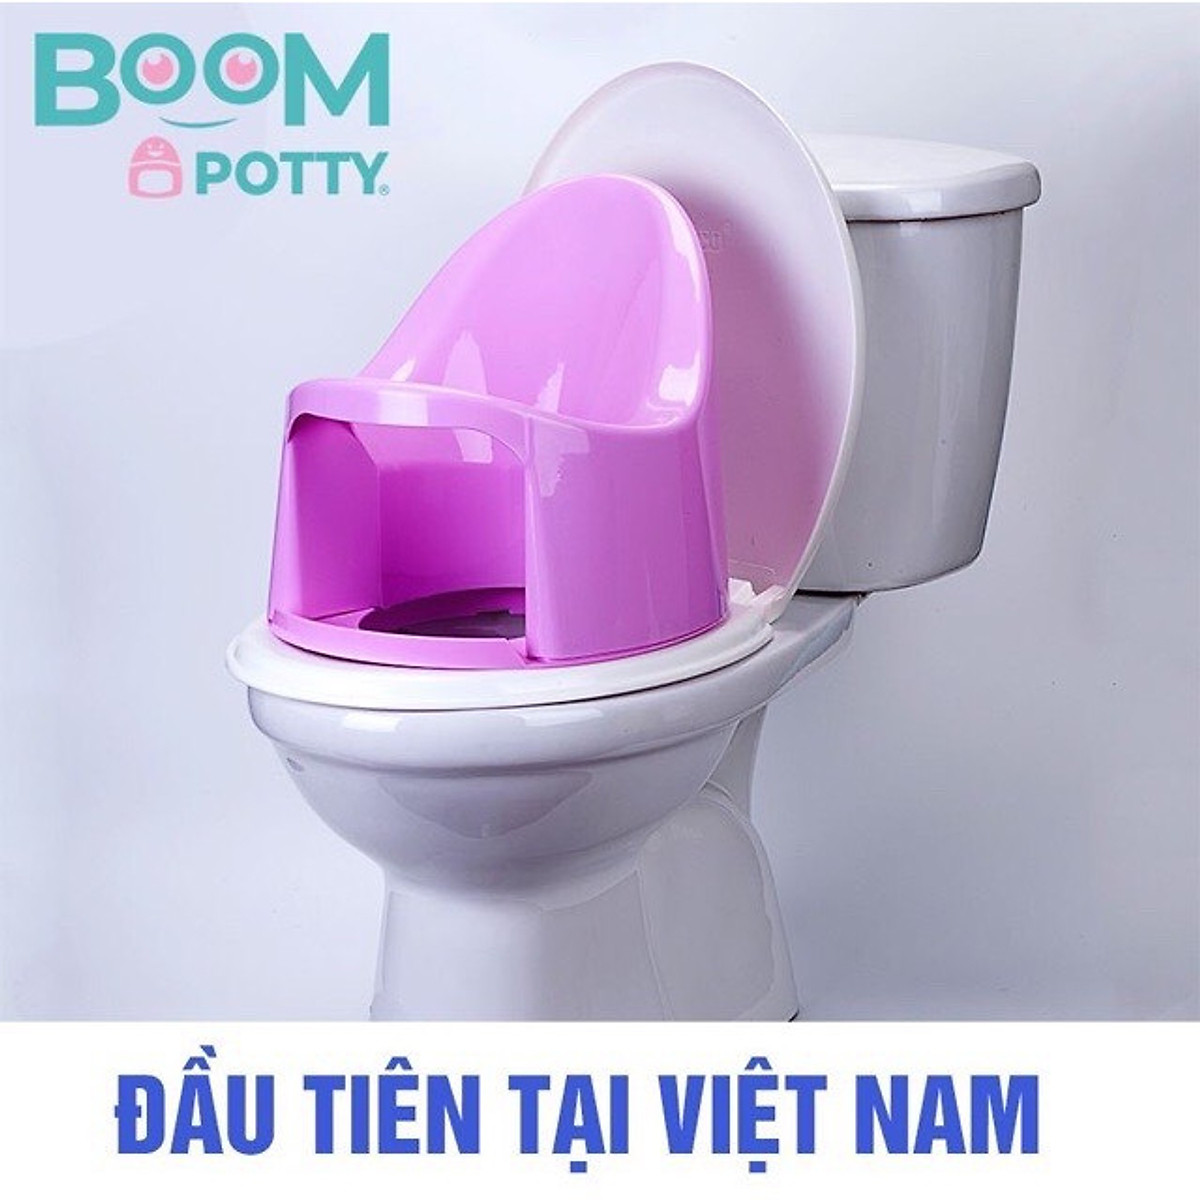 Bô cho bé ,Bô Boom Potty vệ sinh cho bé từ 7 tháng (8.5KG) đến